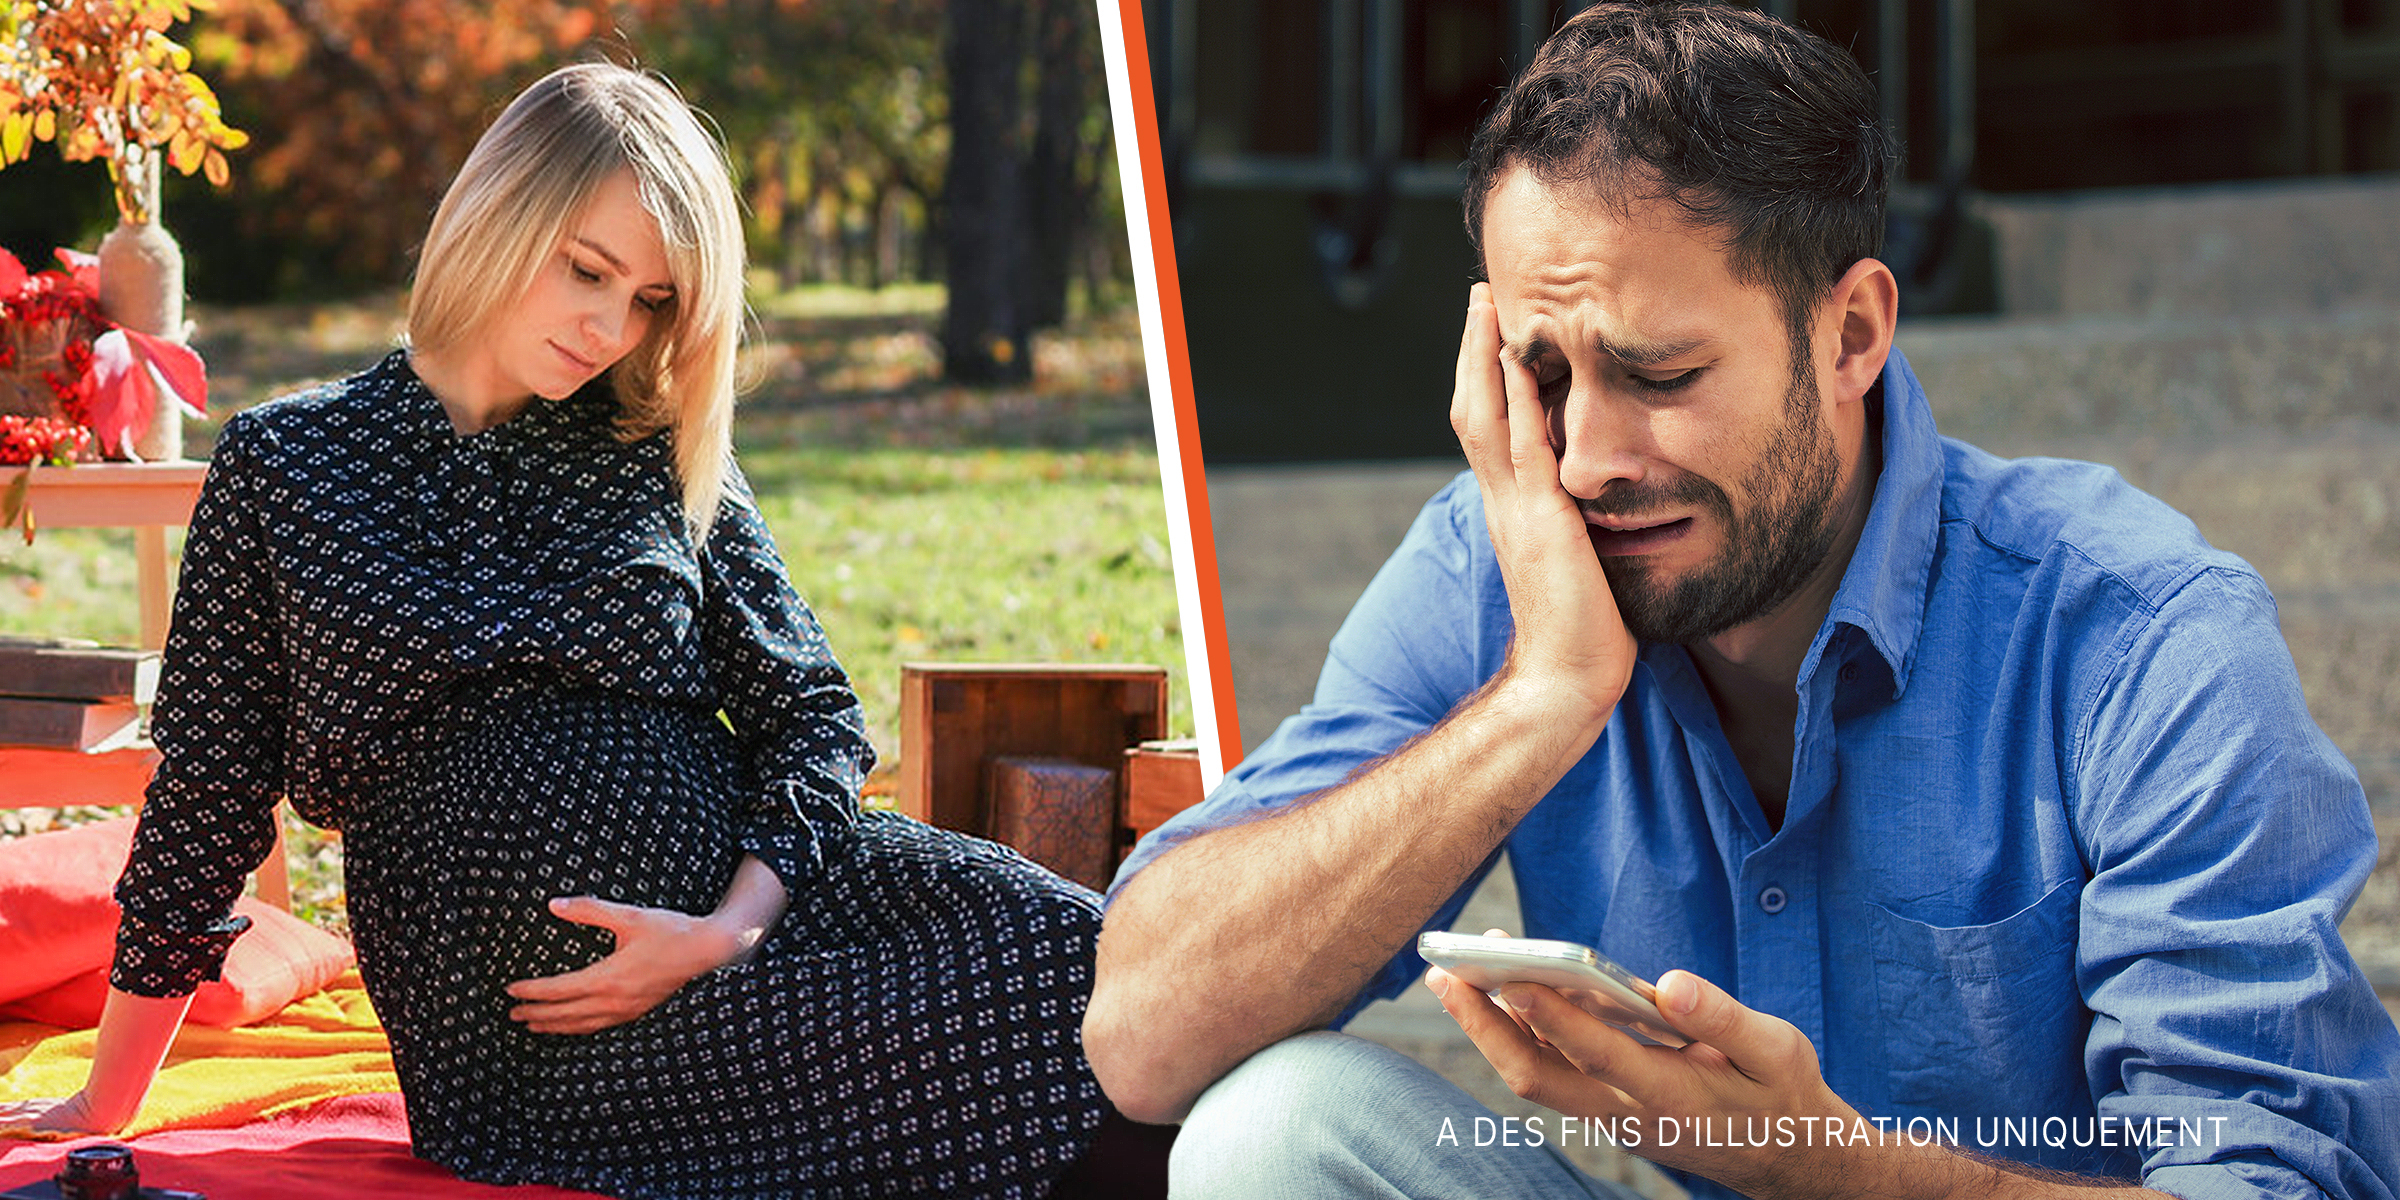 Une femme enceinte | Un homme qui pleure | Source : Shutterstock | flickr.com/10streets/CC BY 2.0